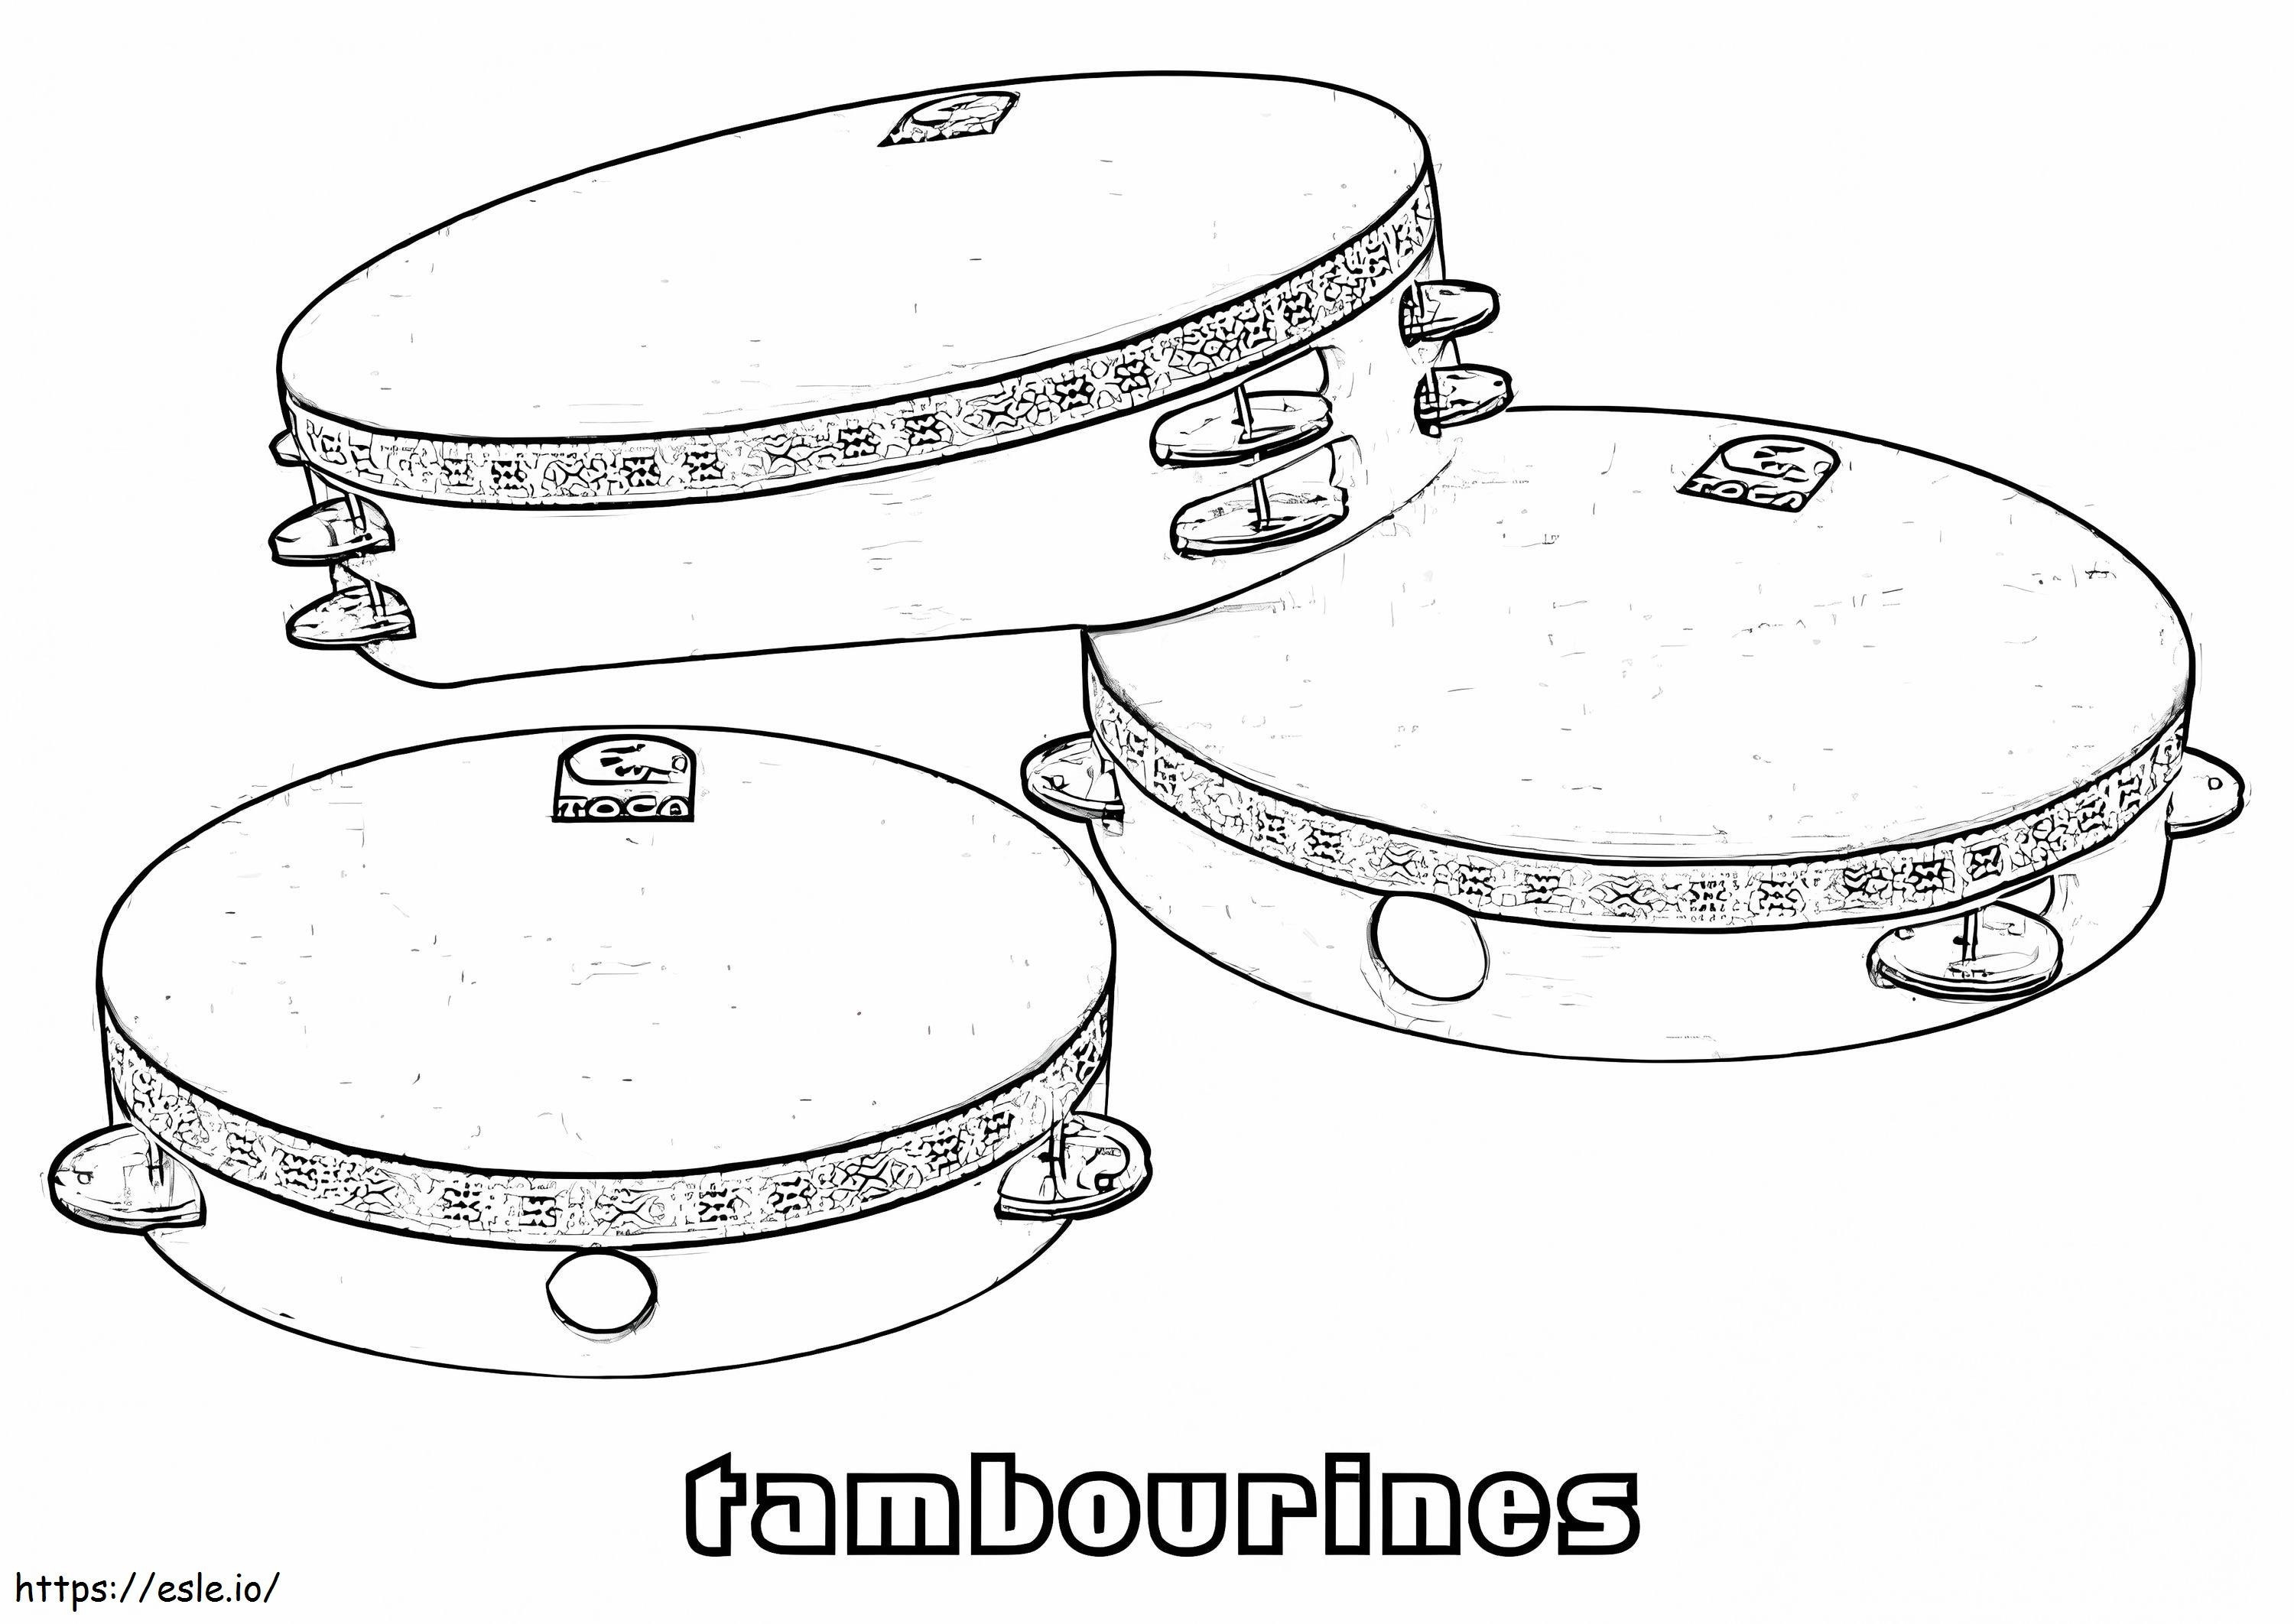 Trei tamburine de colorat